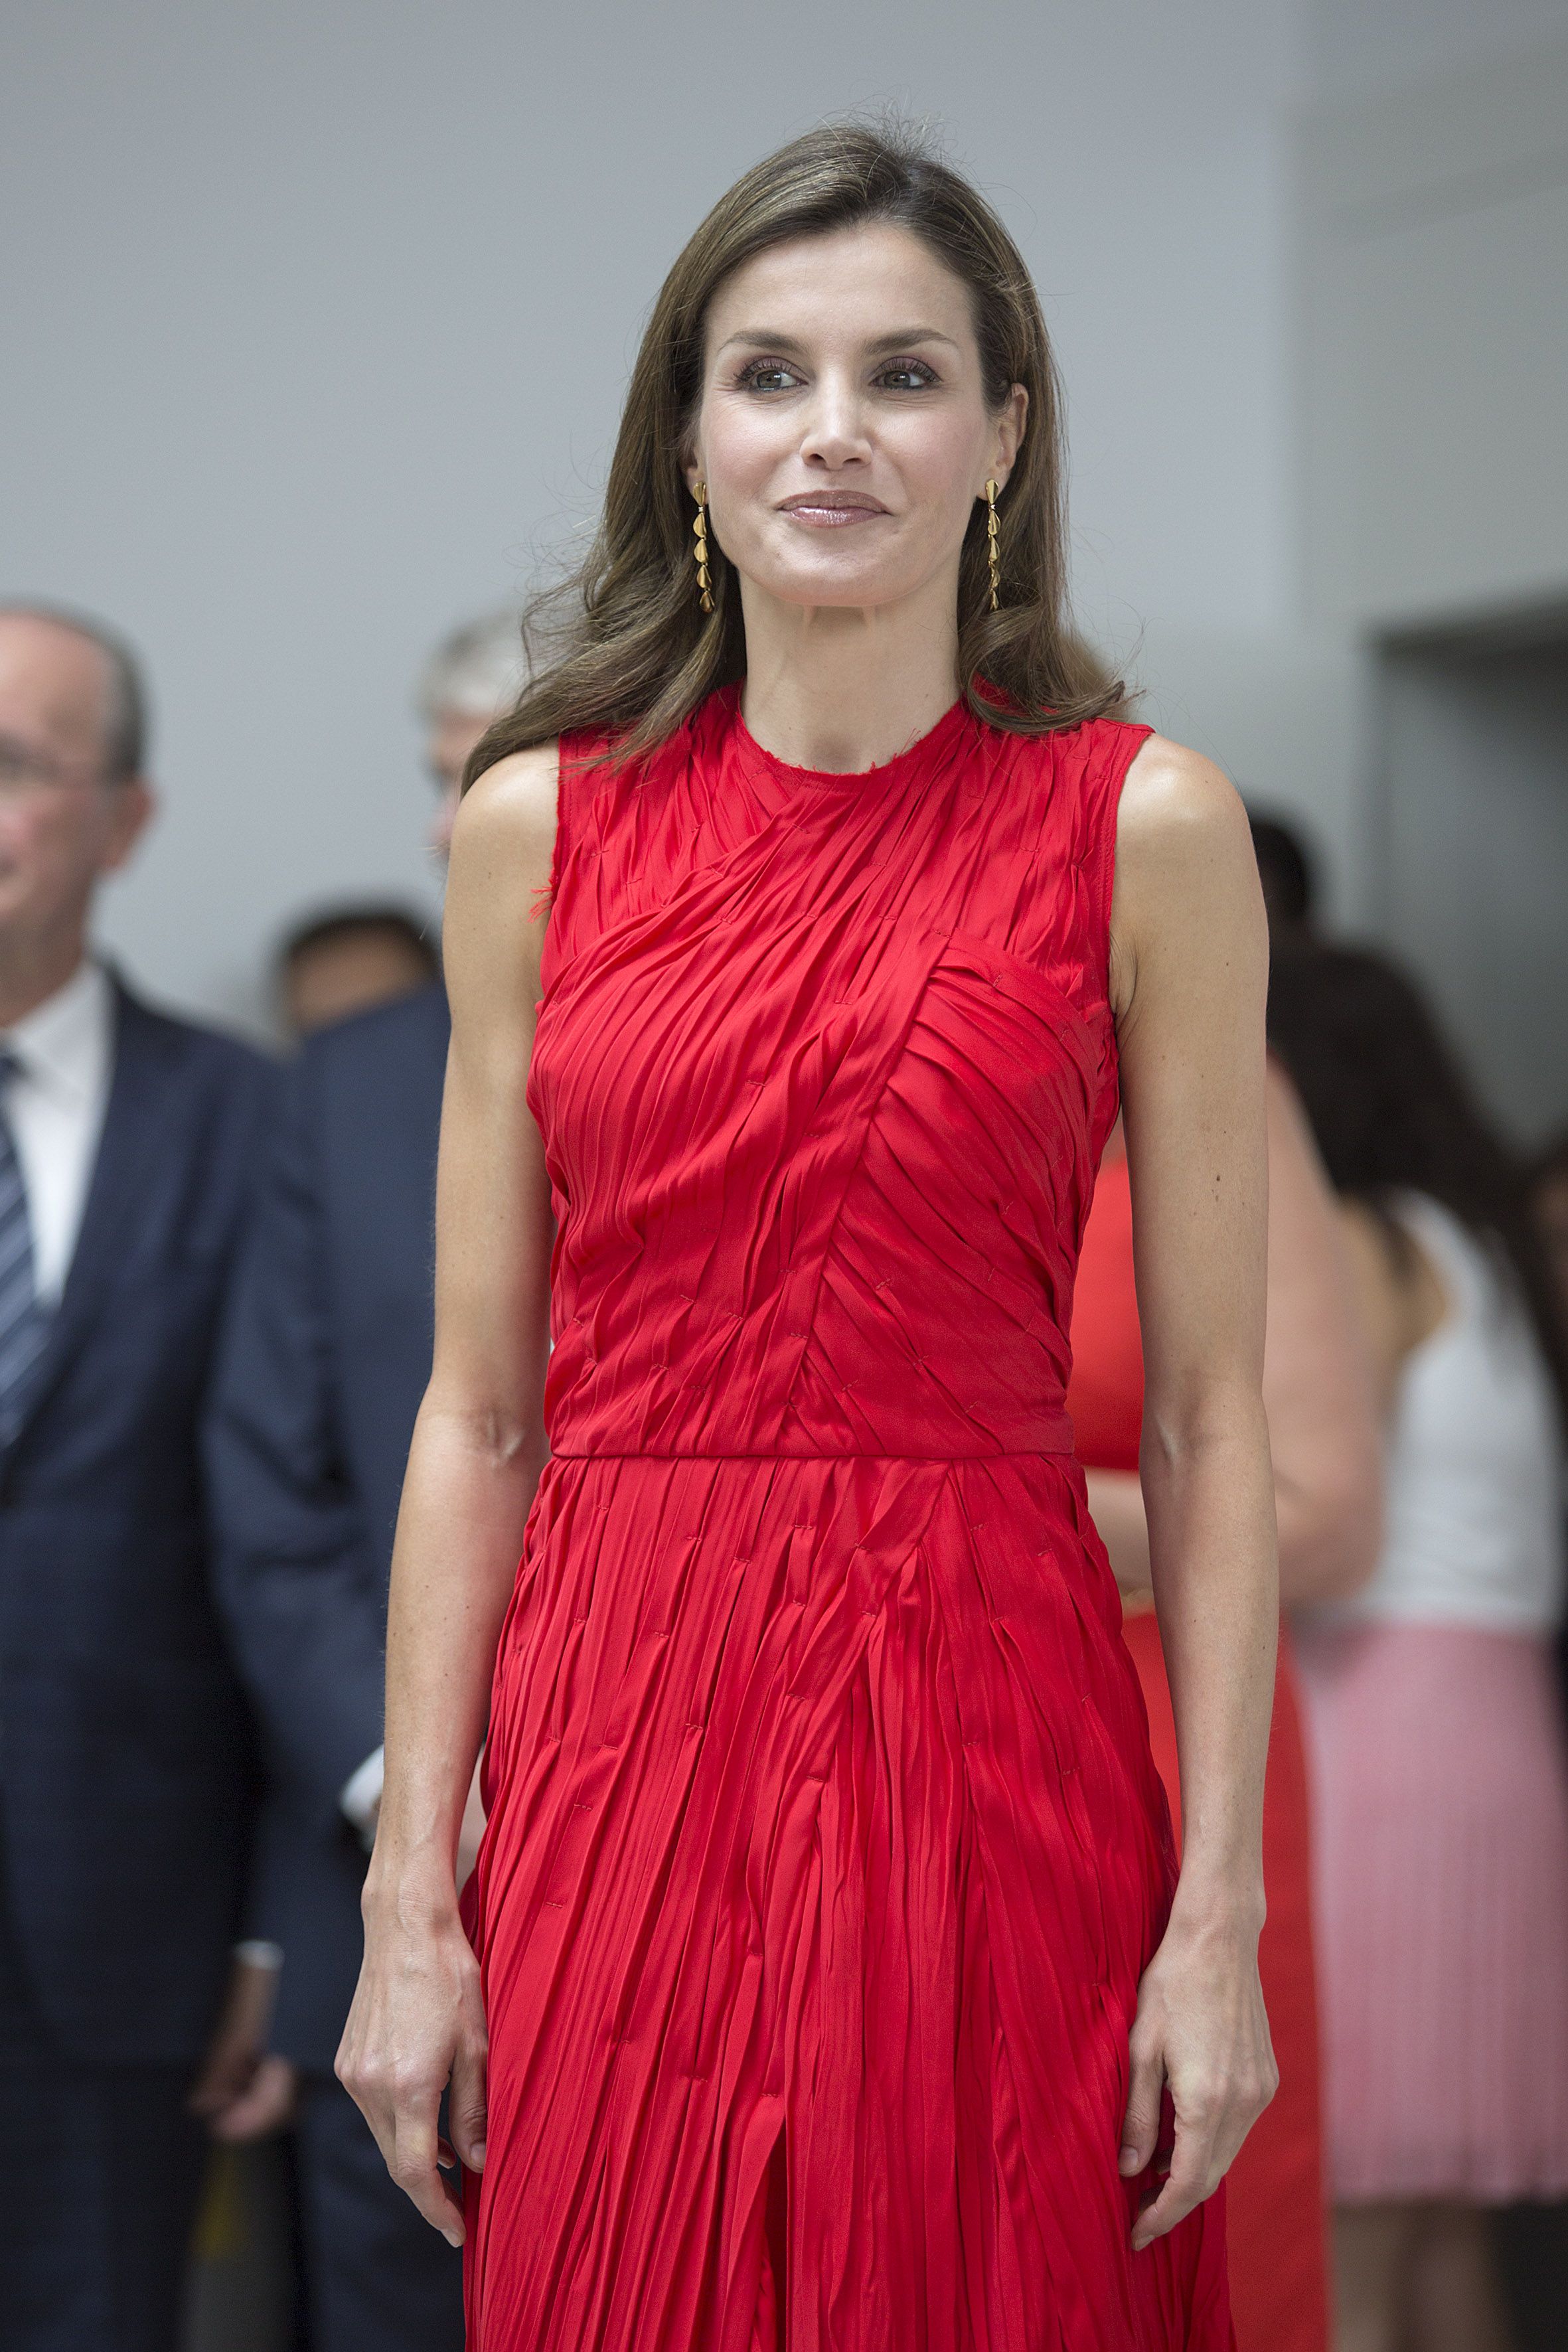 Королева Летиция подчеркнула хрупкую фигуру красным платьем (фото) | Королевская семья | 1+1